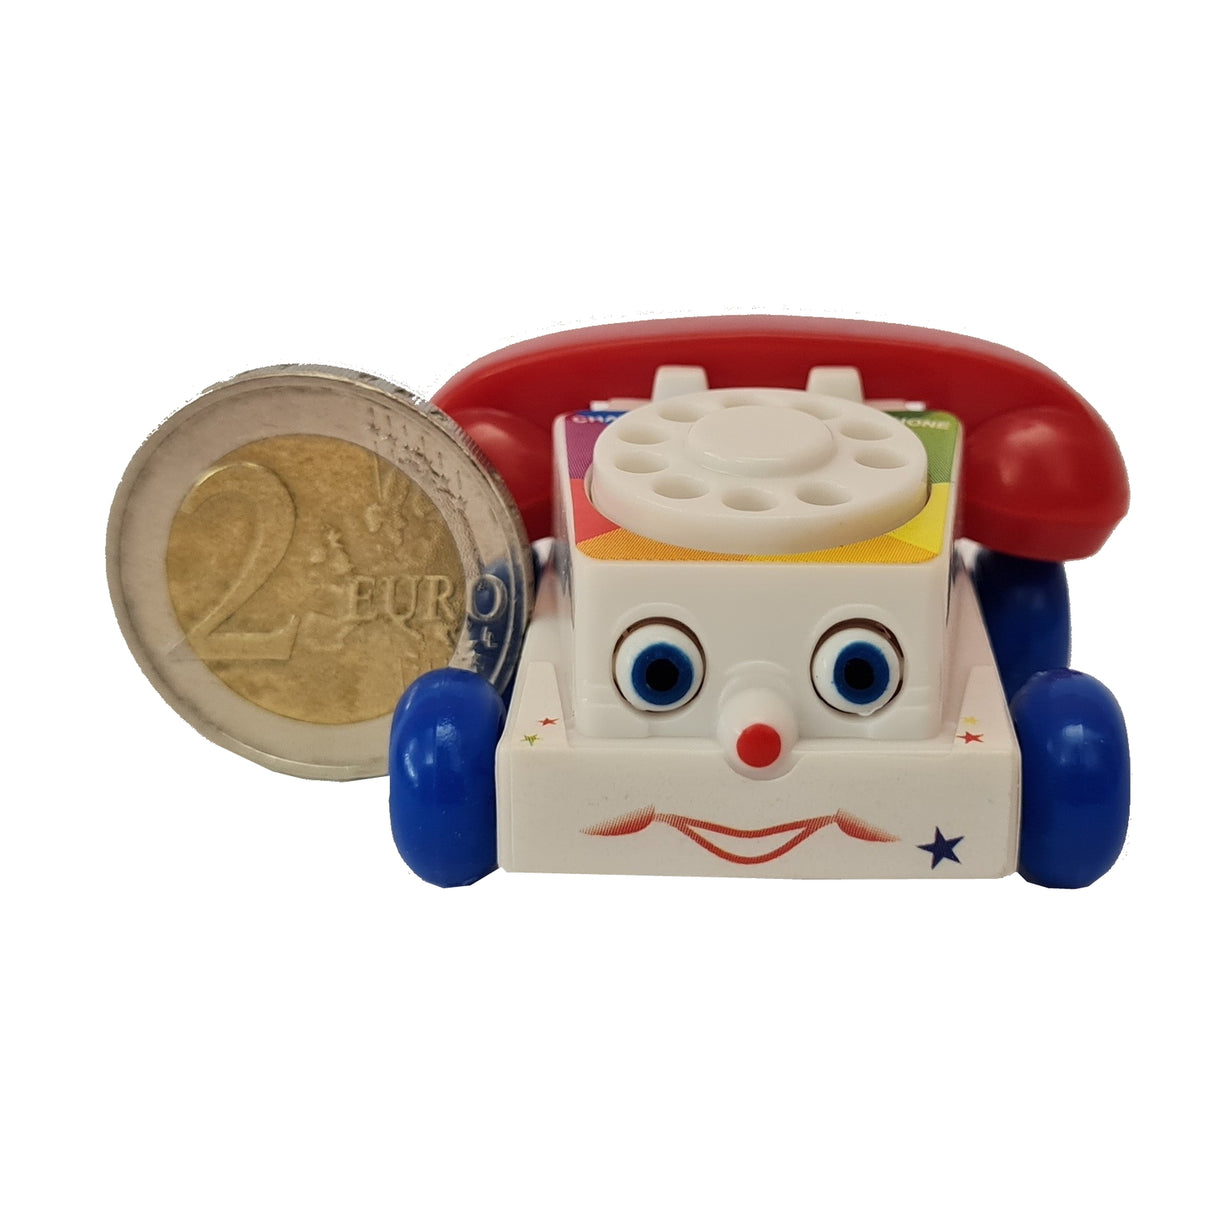 Mini Plapper Telefon Spielzeug